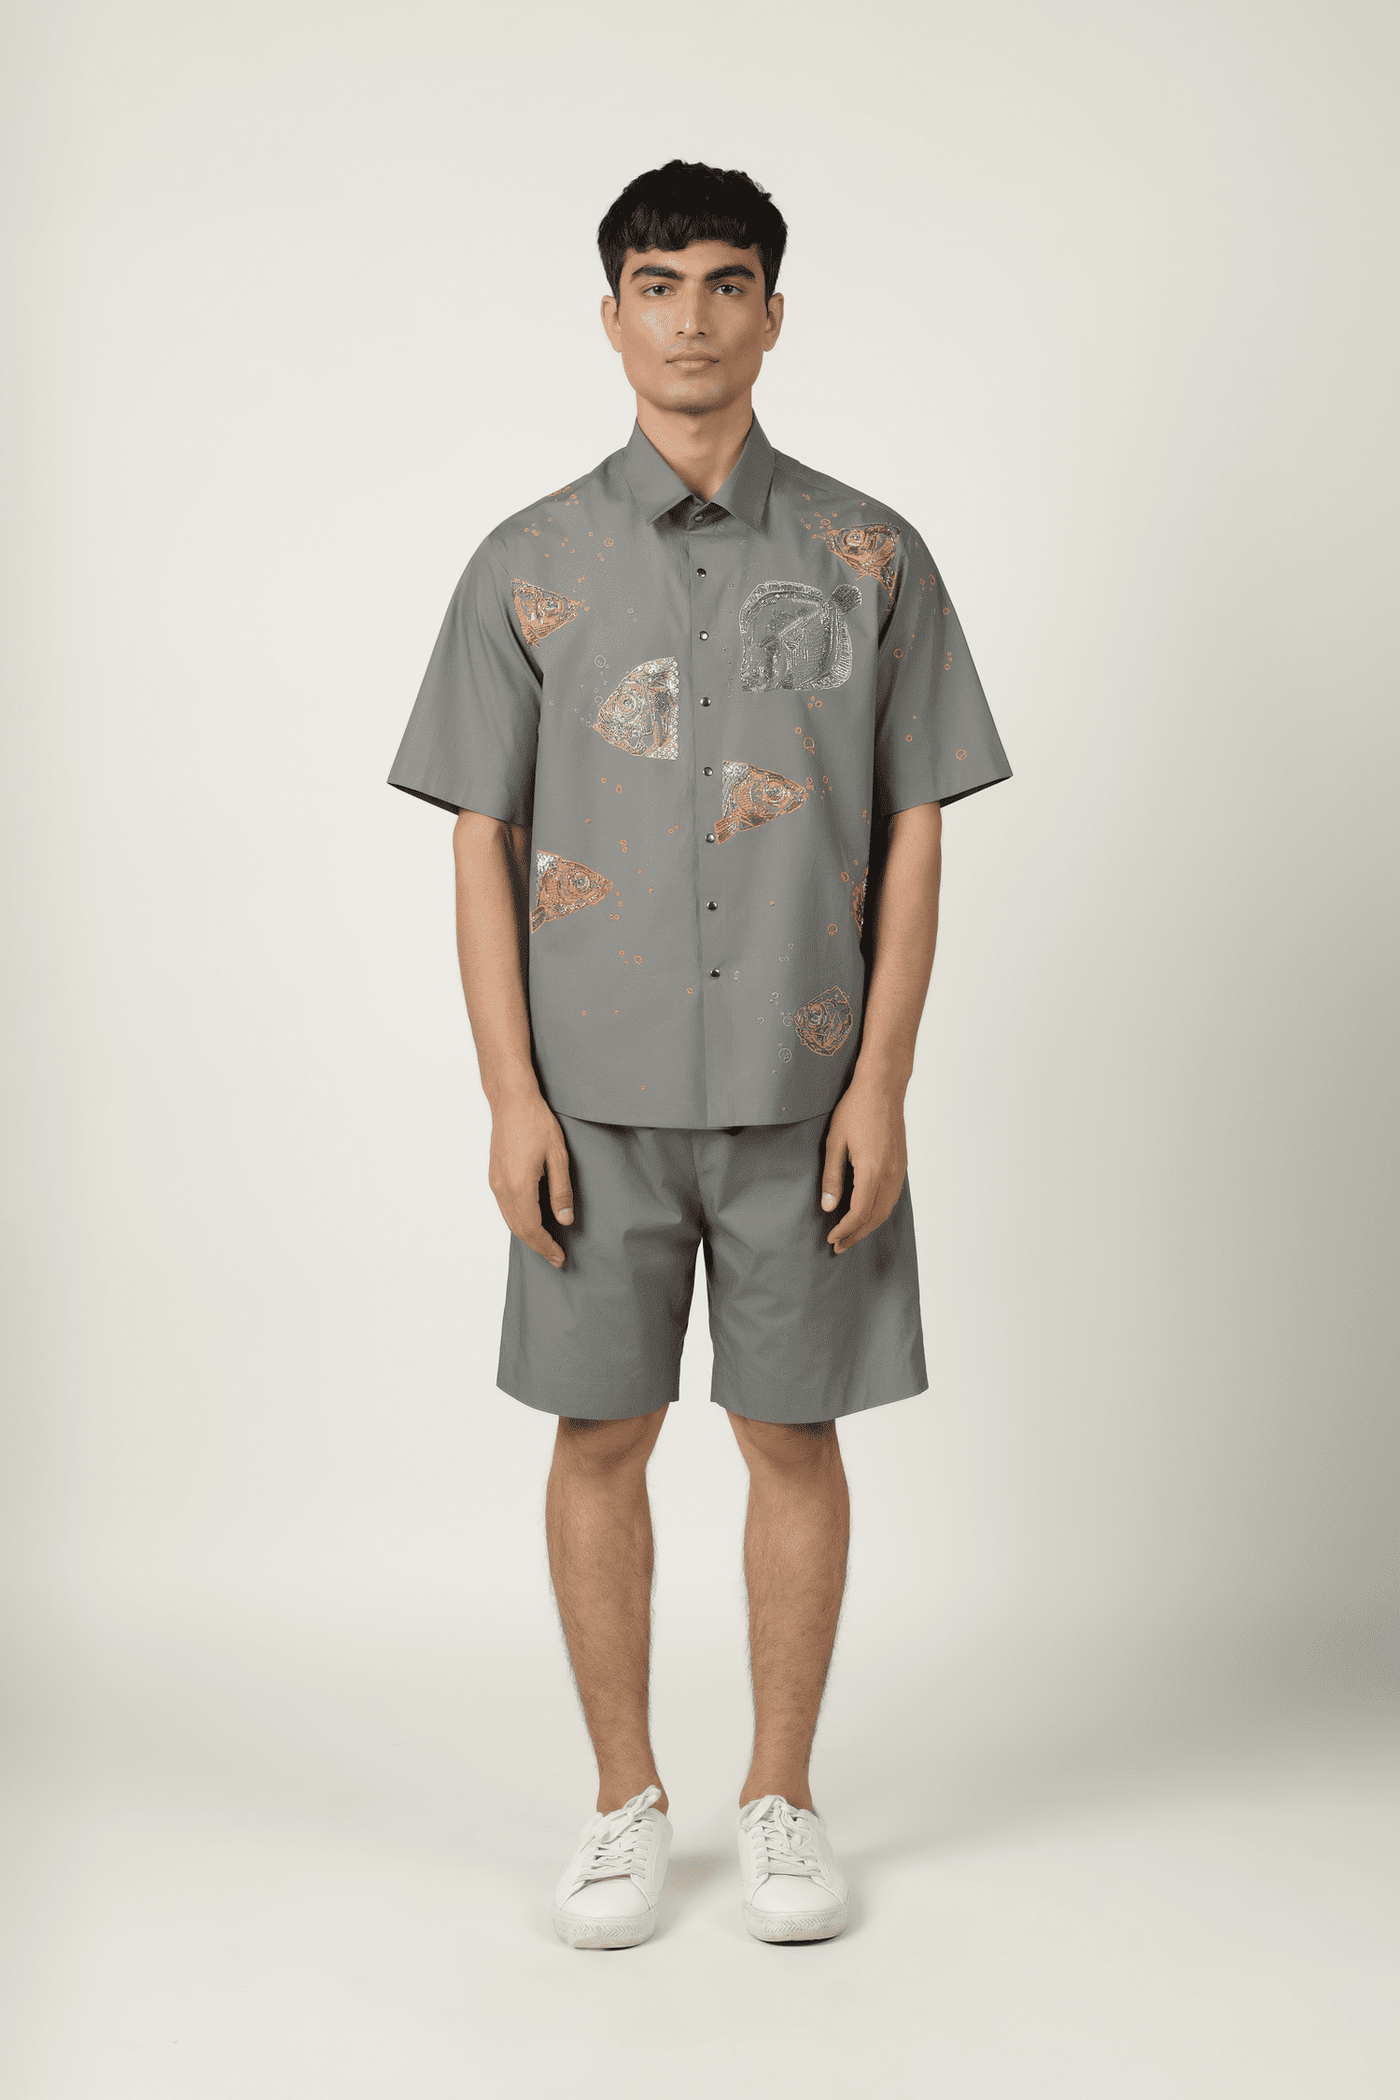 Fish Market Shirt With Shorts